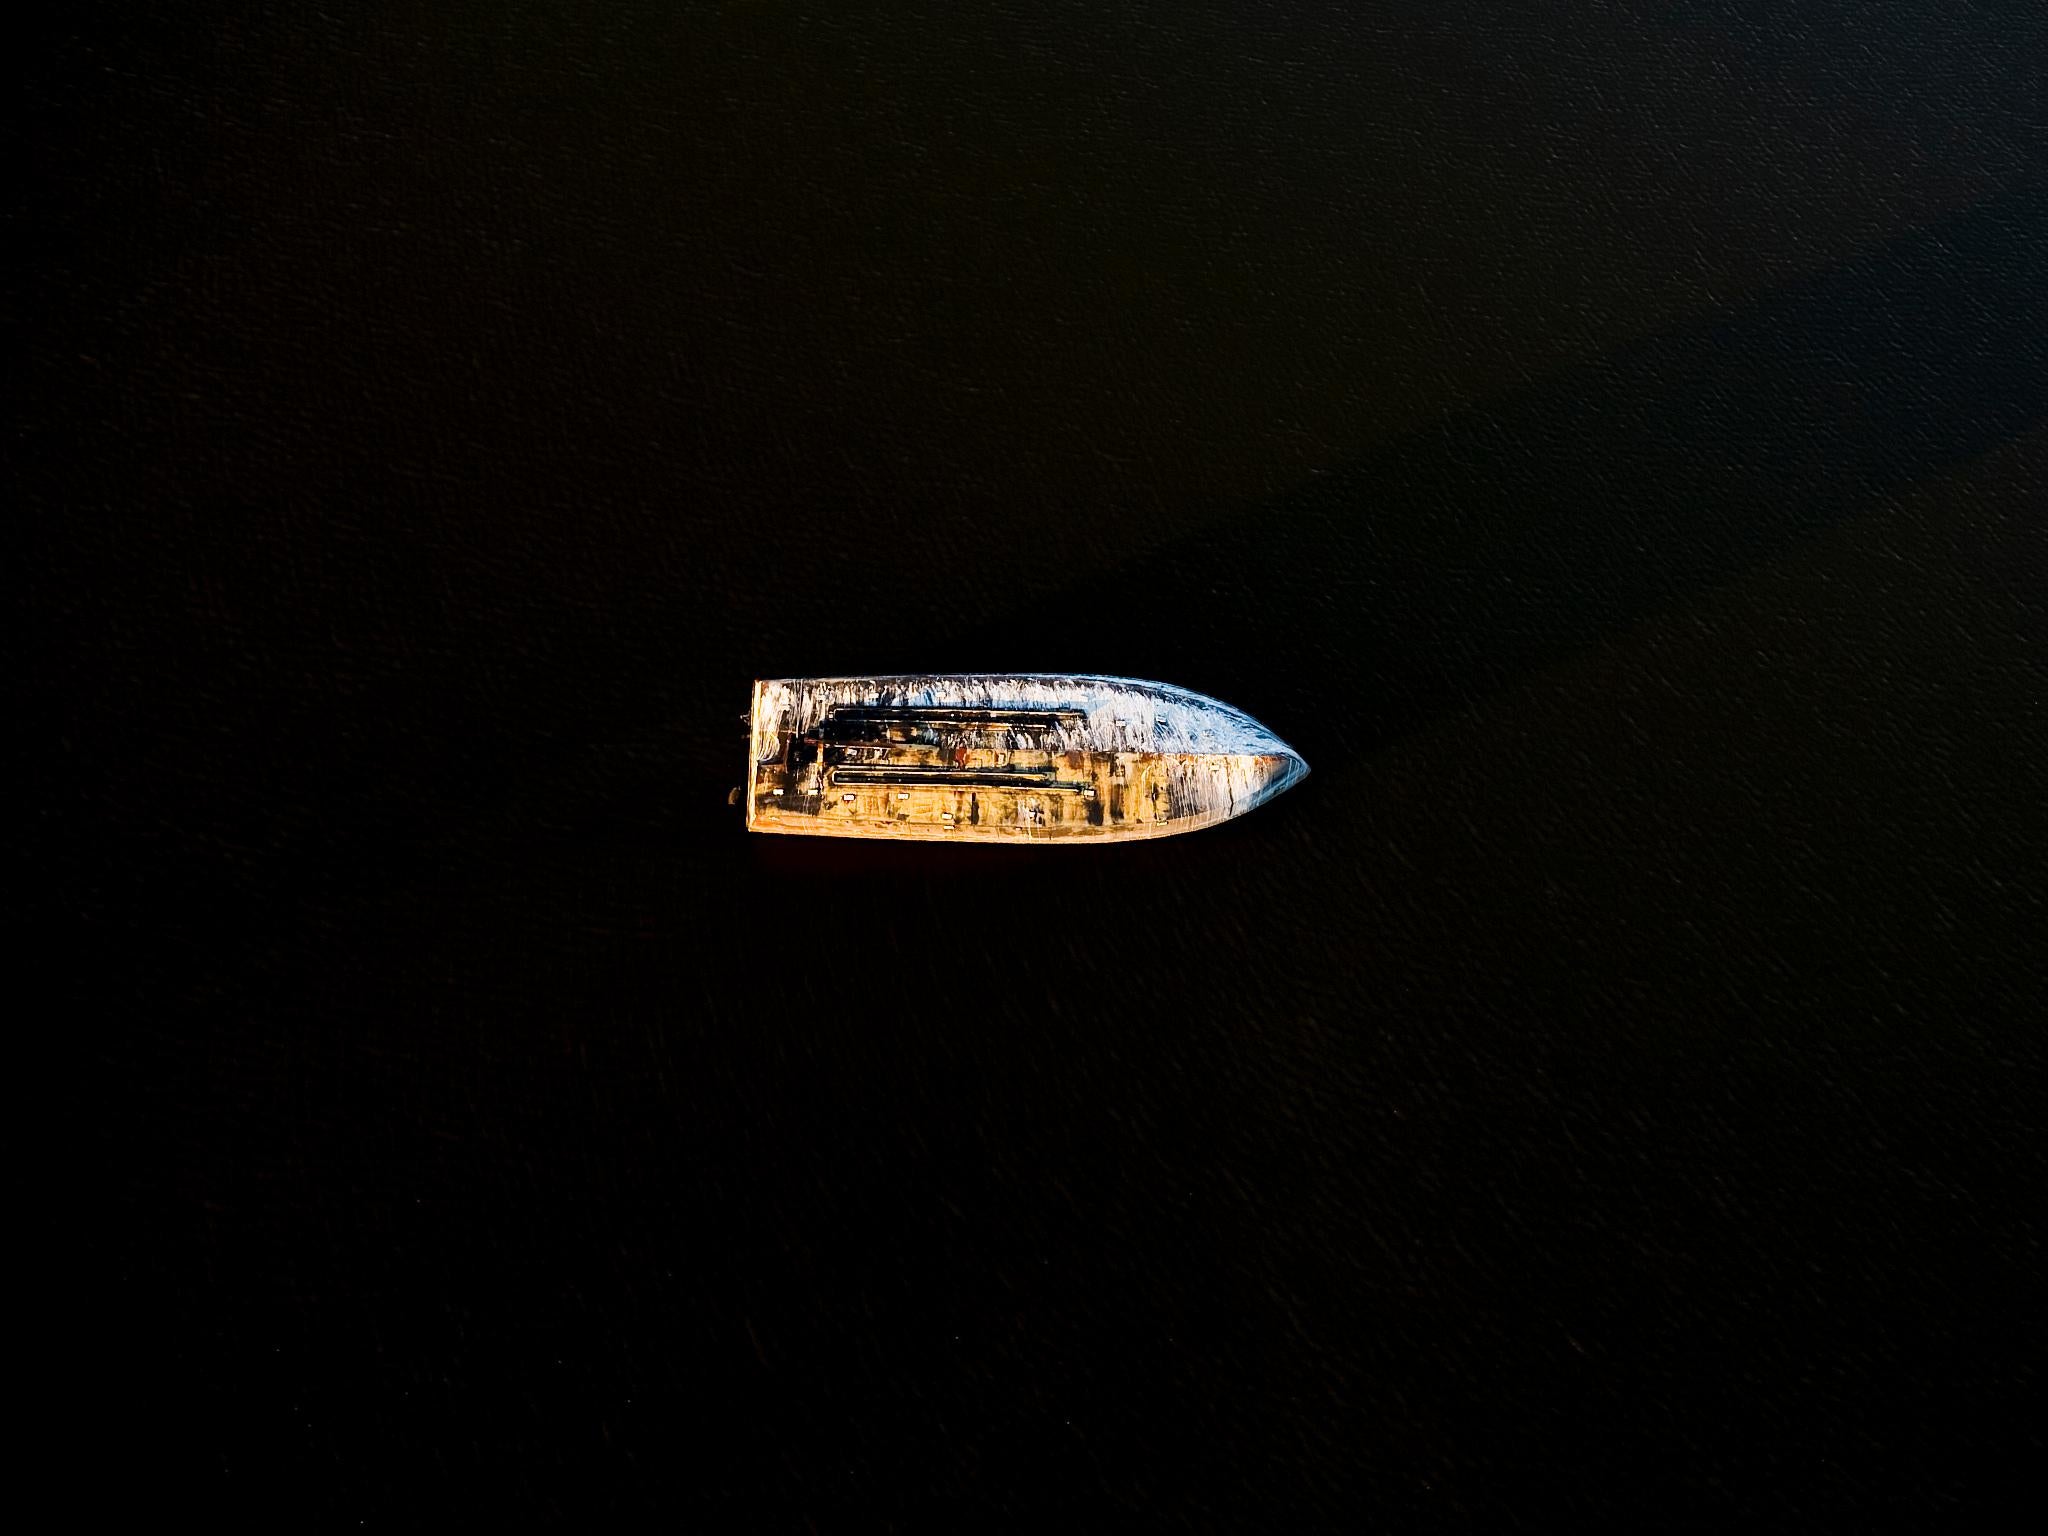 Ben Depp Color Photograph - Capsized Boat